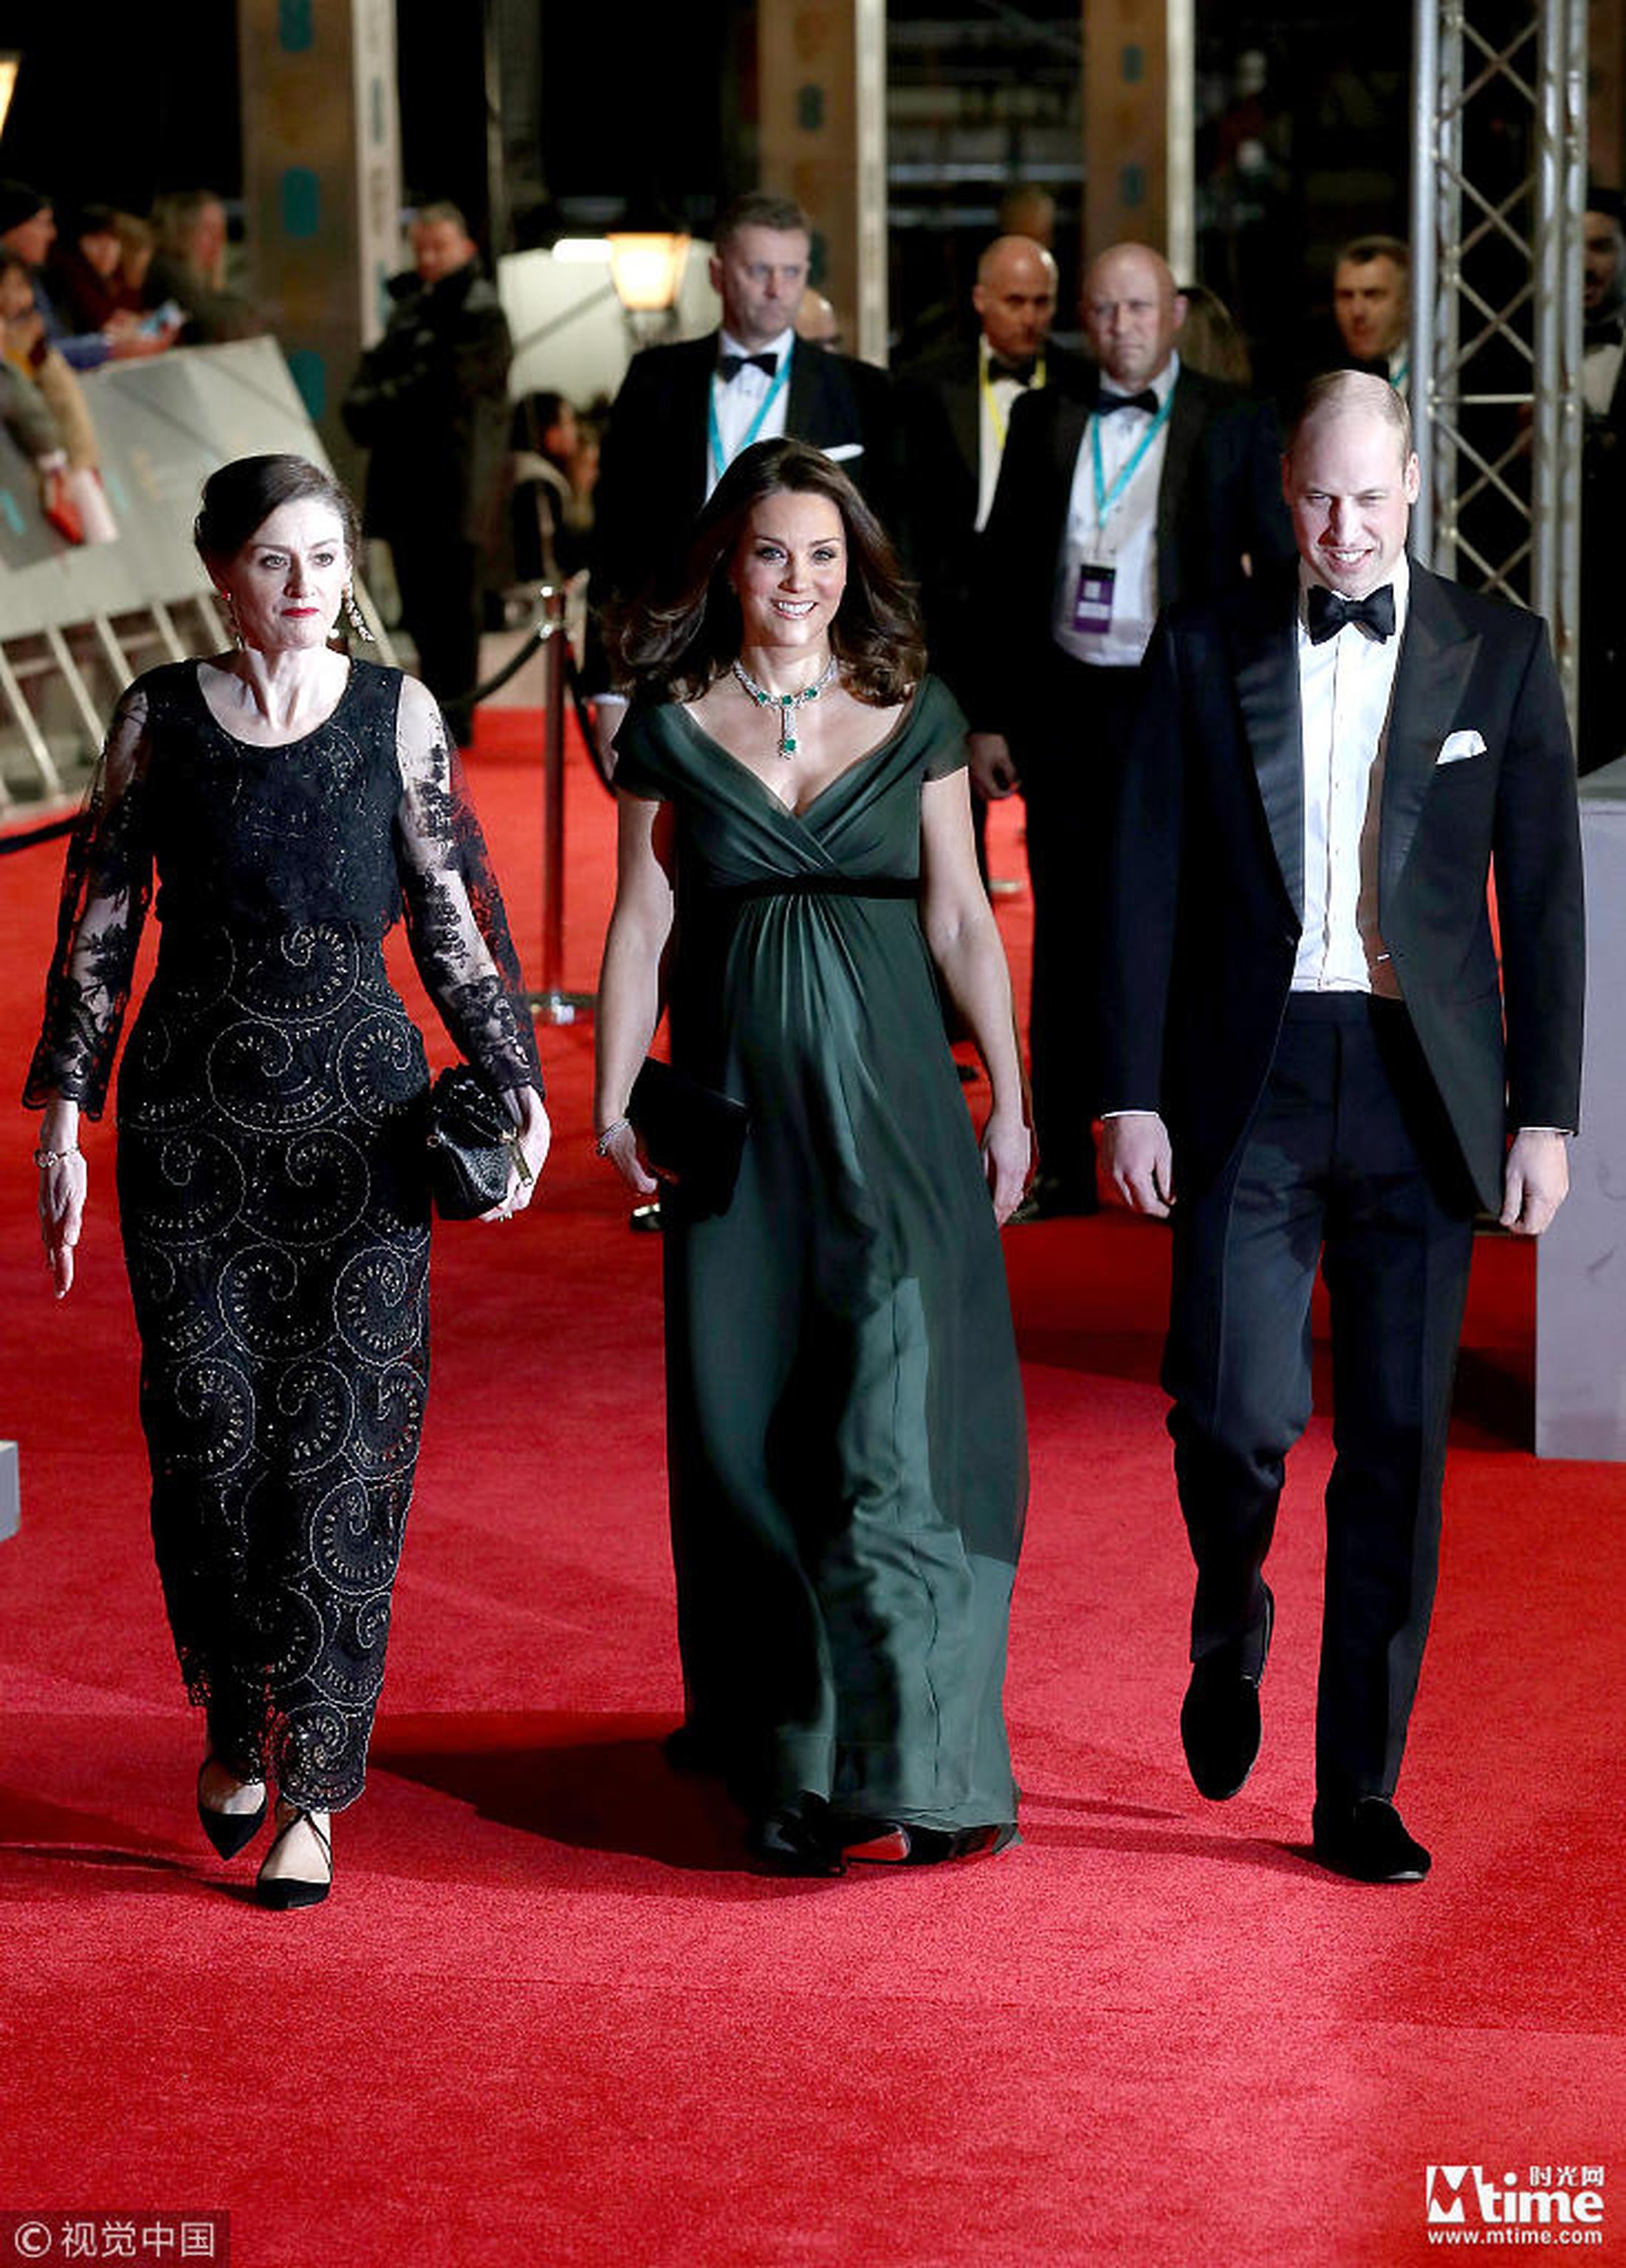 电影节主席陪同英国王子王妃走红毯